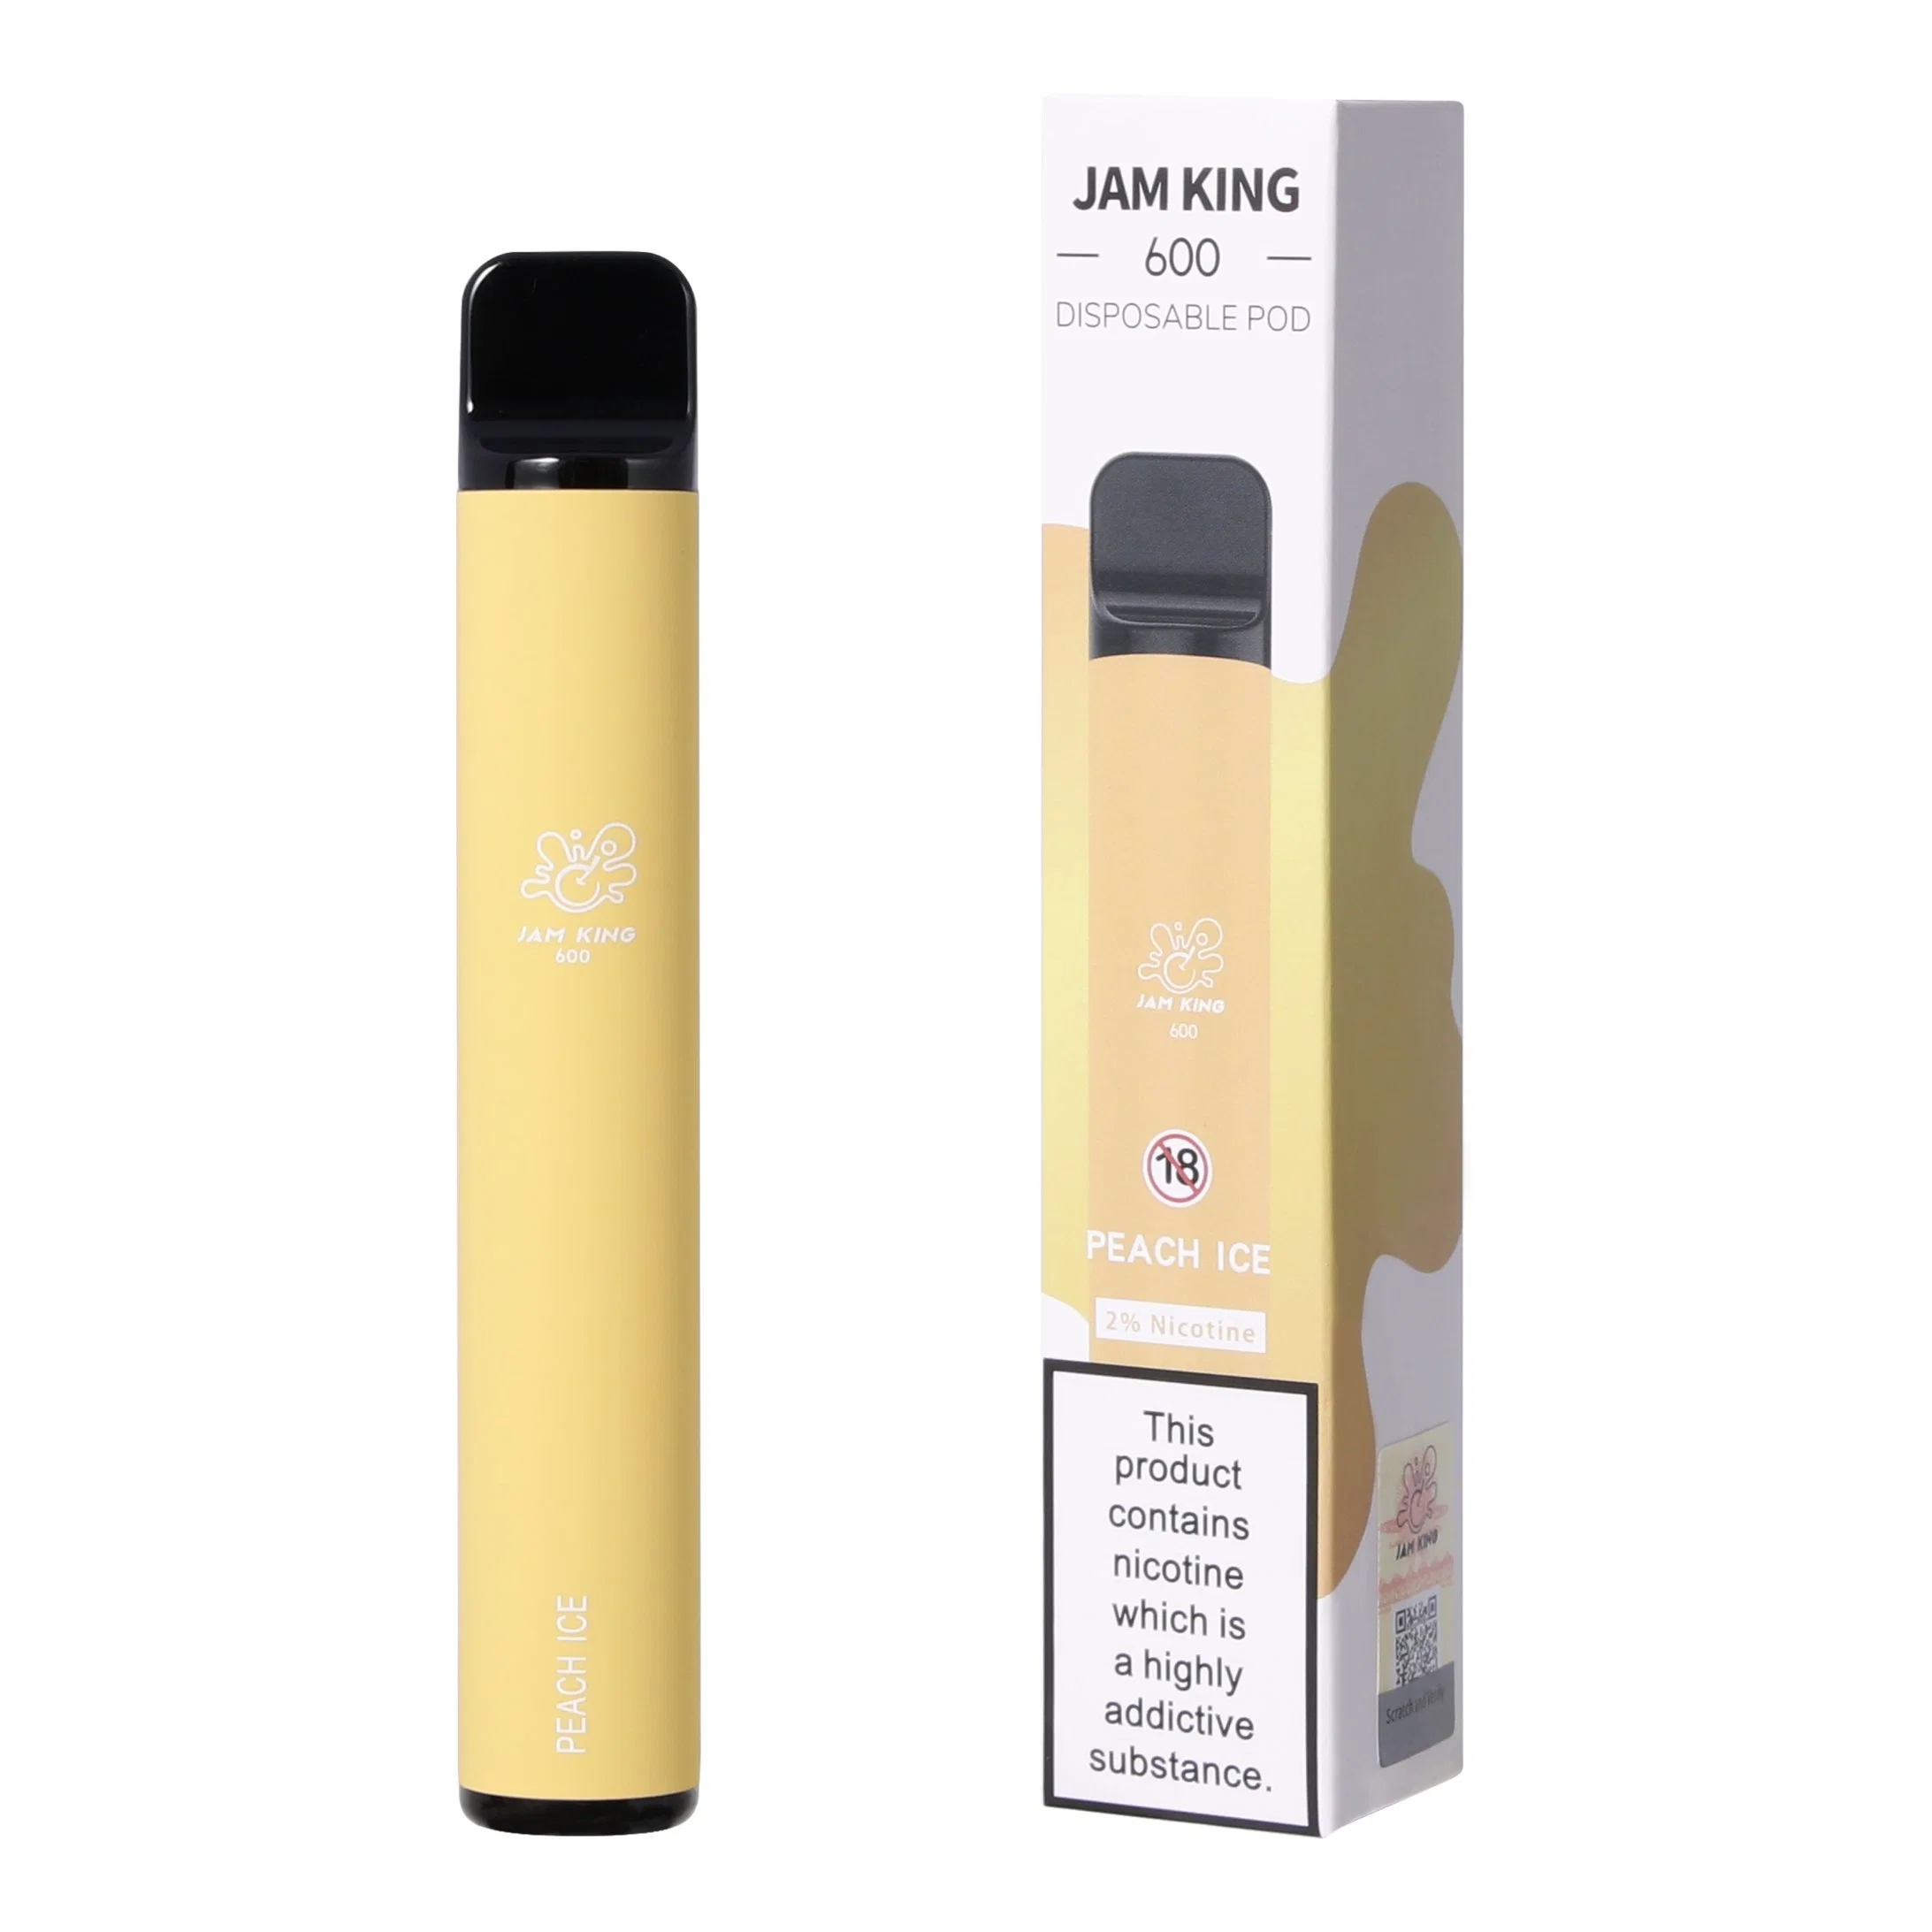 Jam King 600 Vape Puff Disposable E Cigarette 2ml 550mAh Battery Factory China Flavored Vapes Pen Bulk